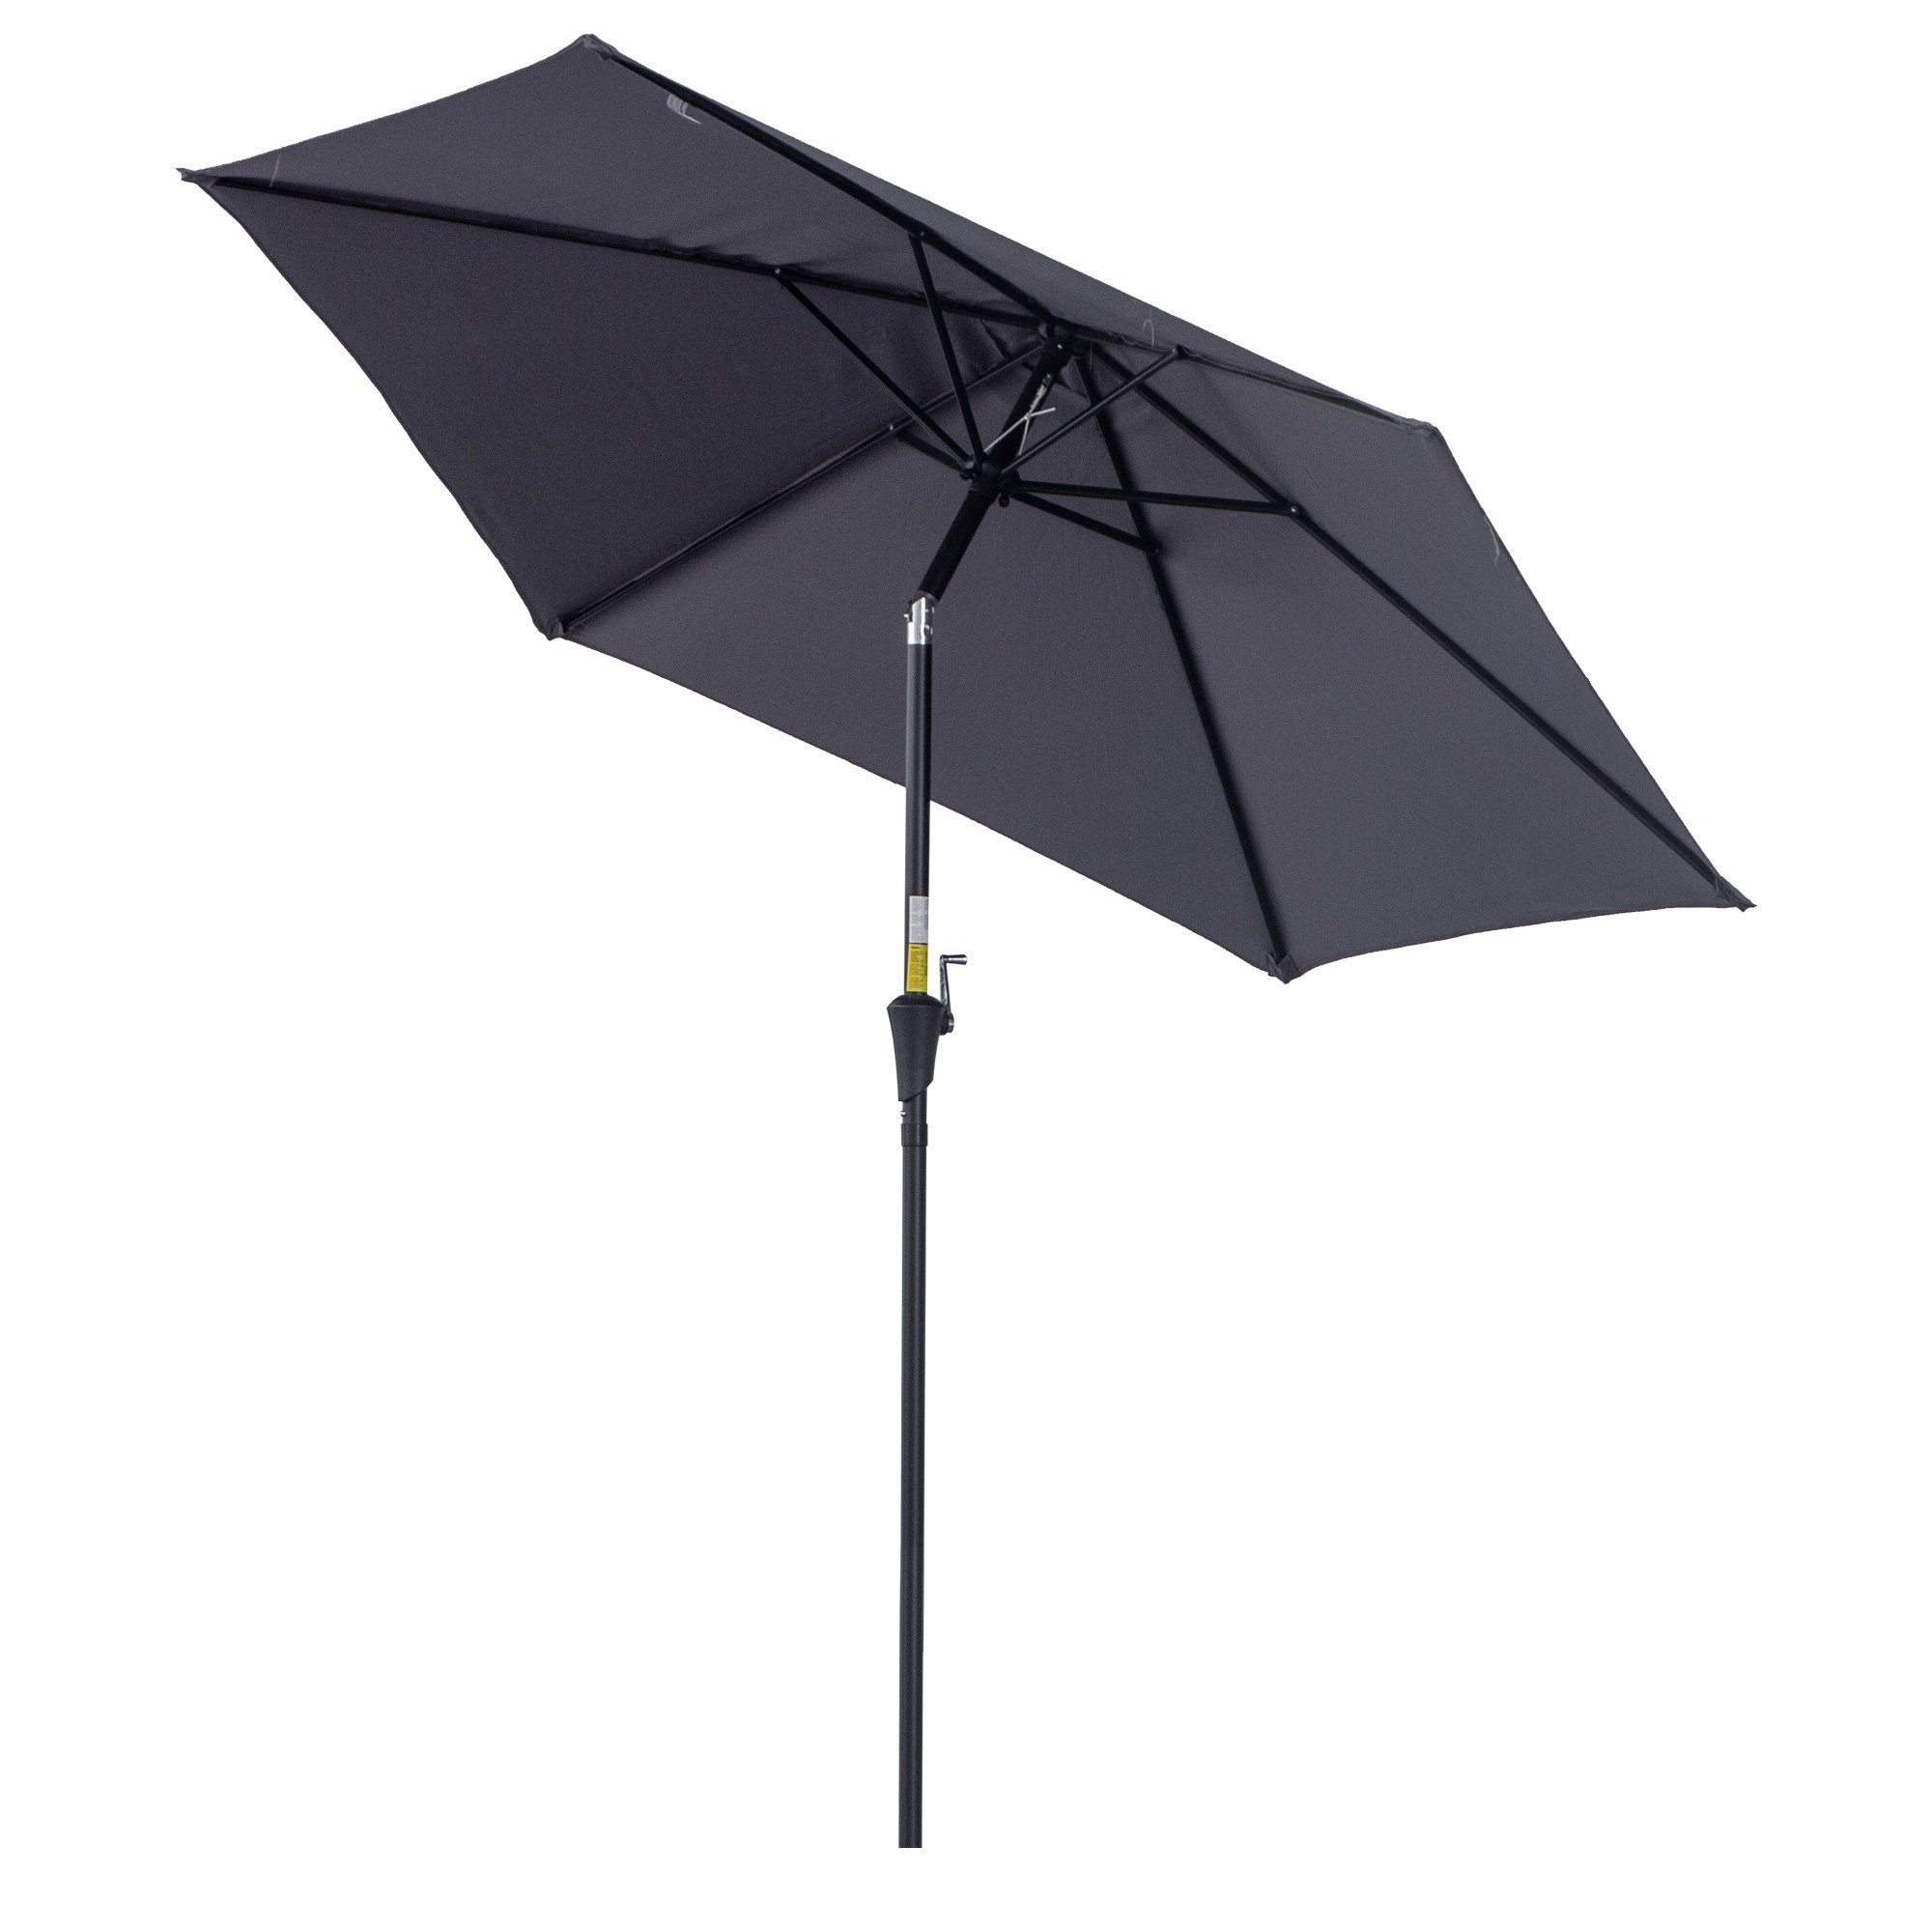 Outsunny Sonnenschirm Marktschirm mit Handkurbel, aus Alu 180/ Polyester, LxB: 260x260 cm, Marktschirm, Sonnenschirm, ohne Schirmständer